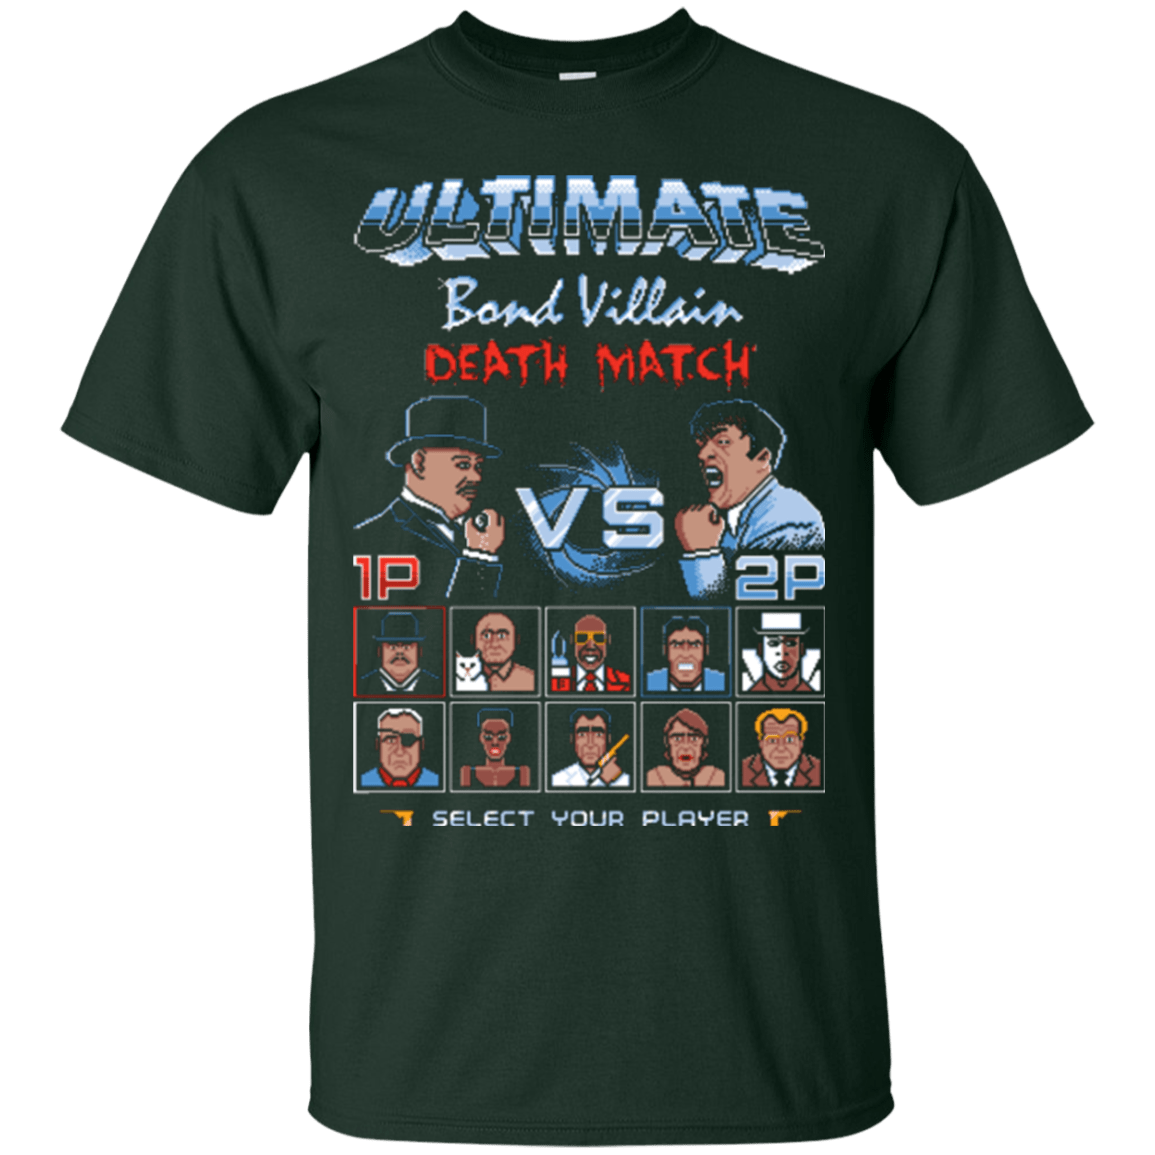 T-Shirts Forest Green / Small Bond Villain Death Match T-Shirt